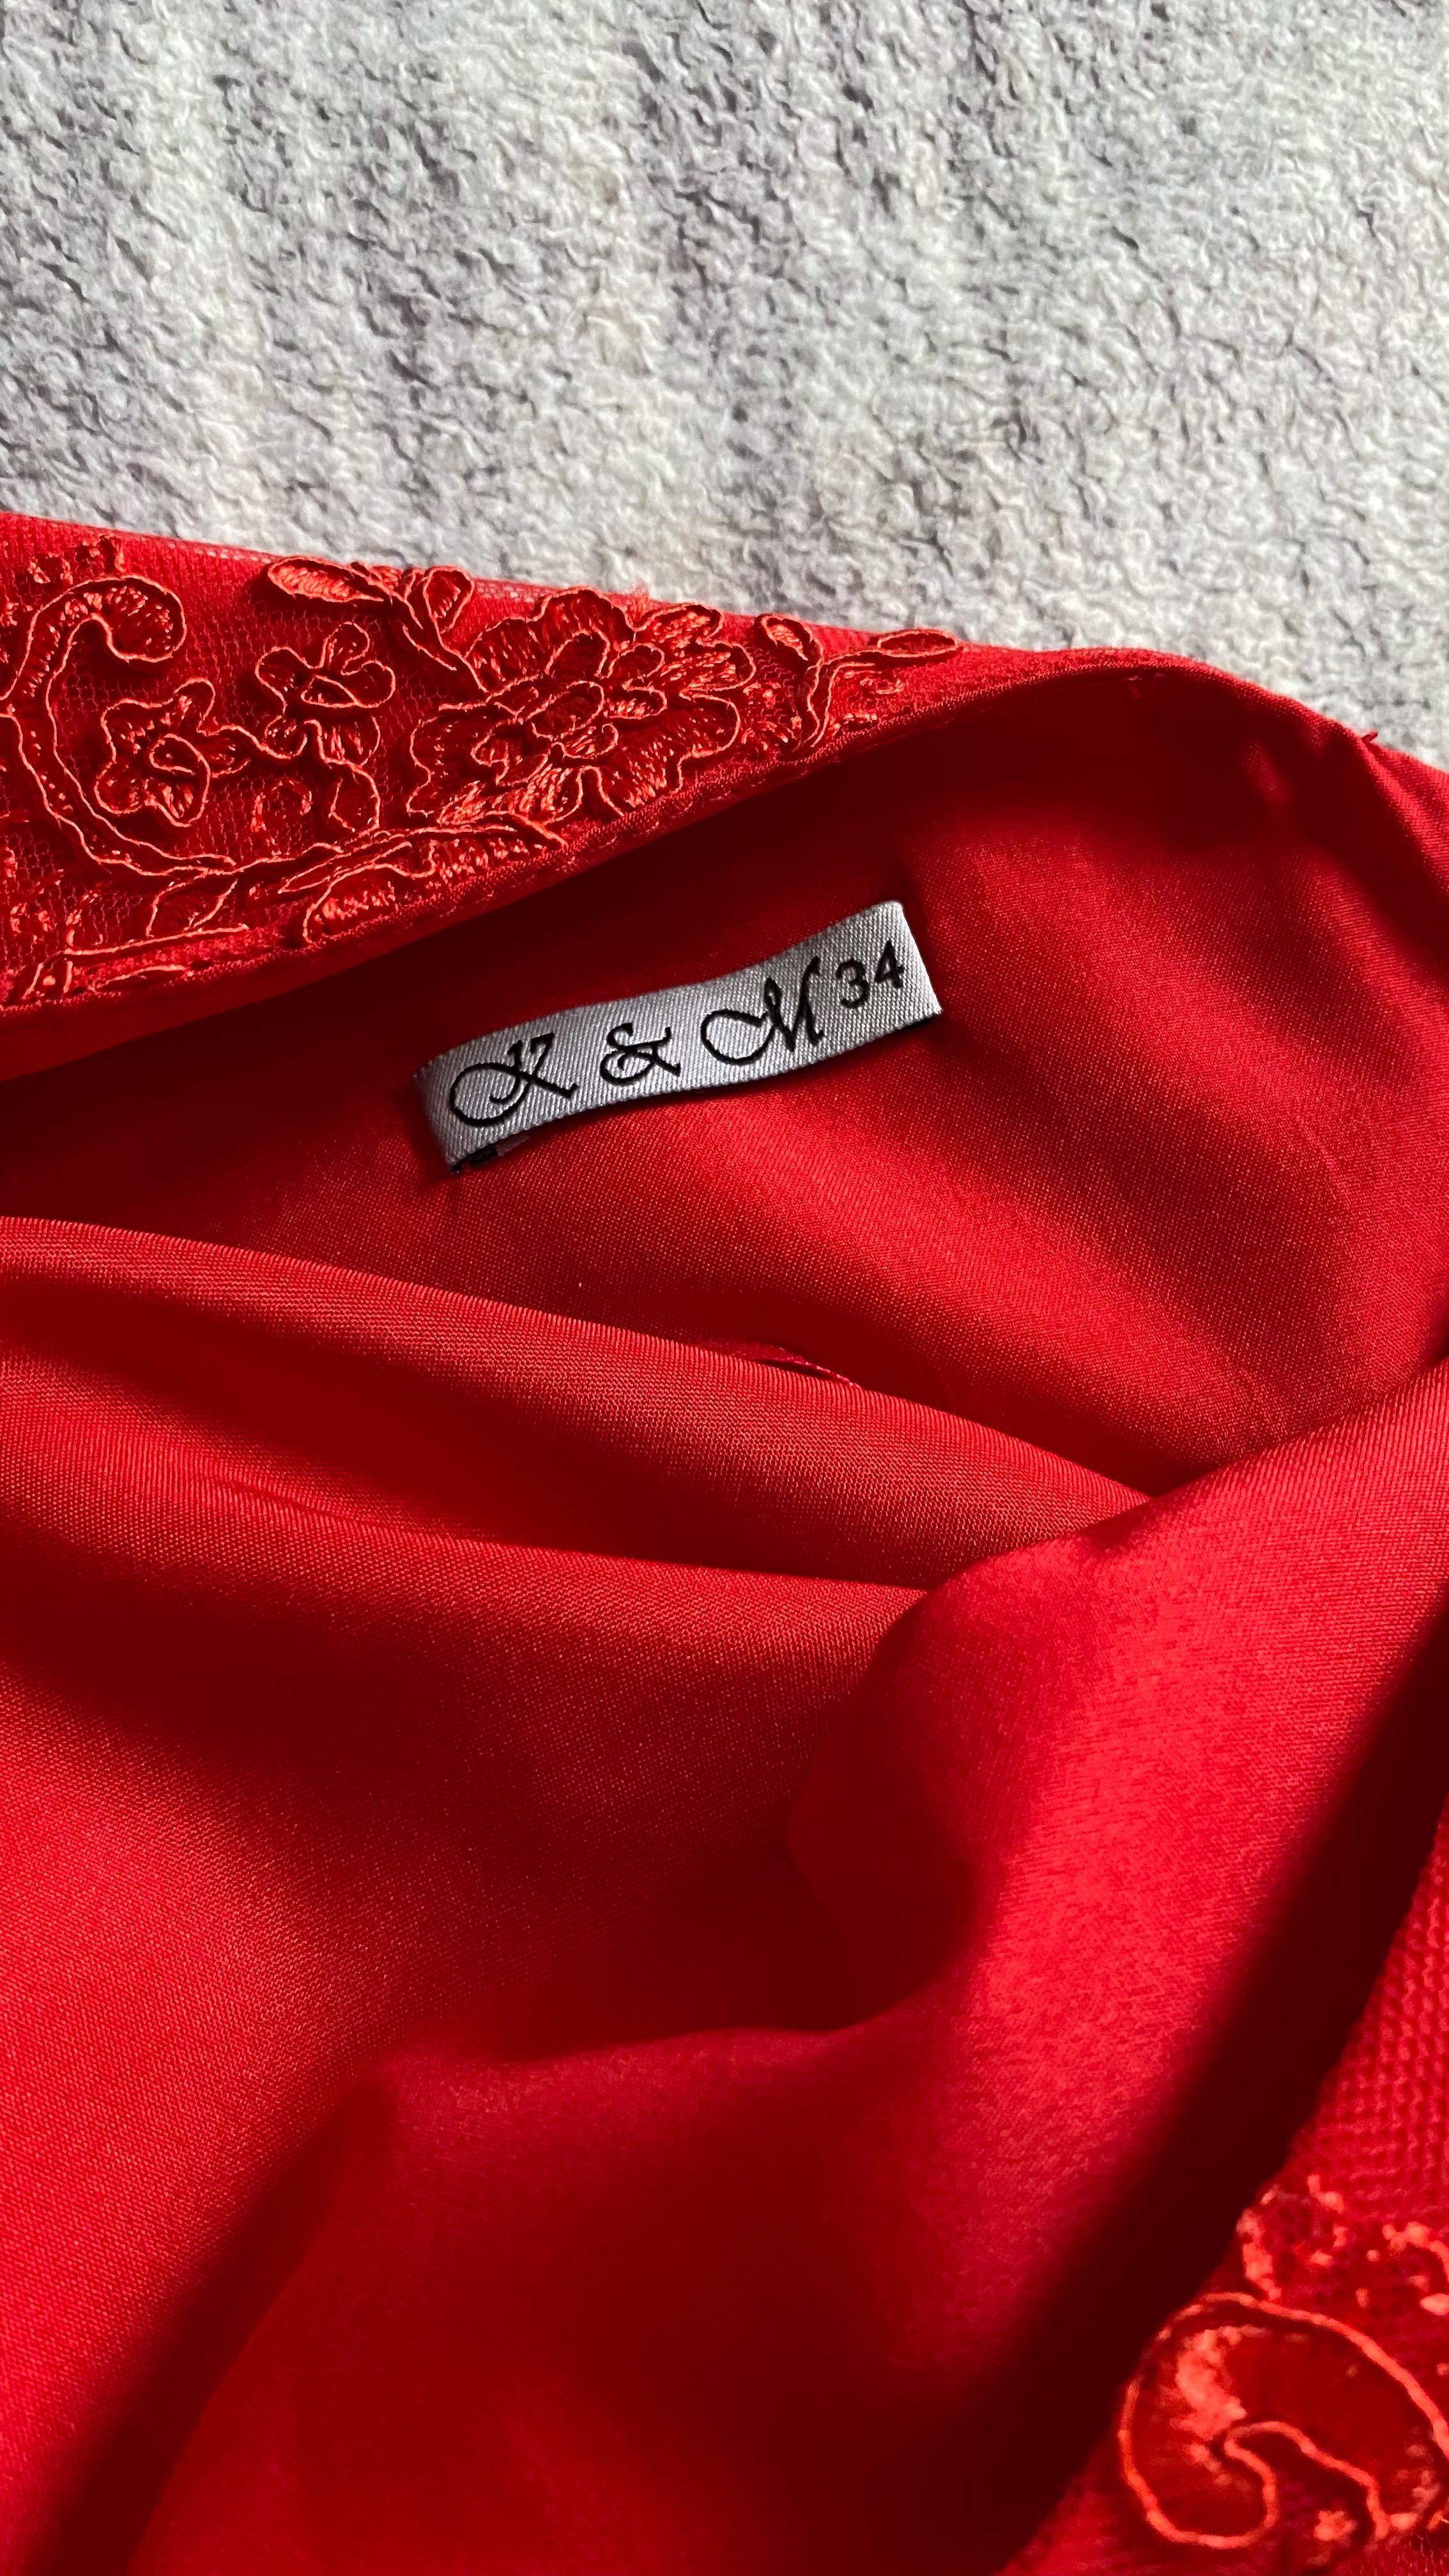 Sukienka maxi czerwona XS wesele